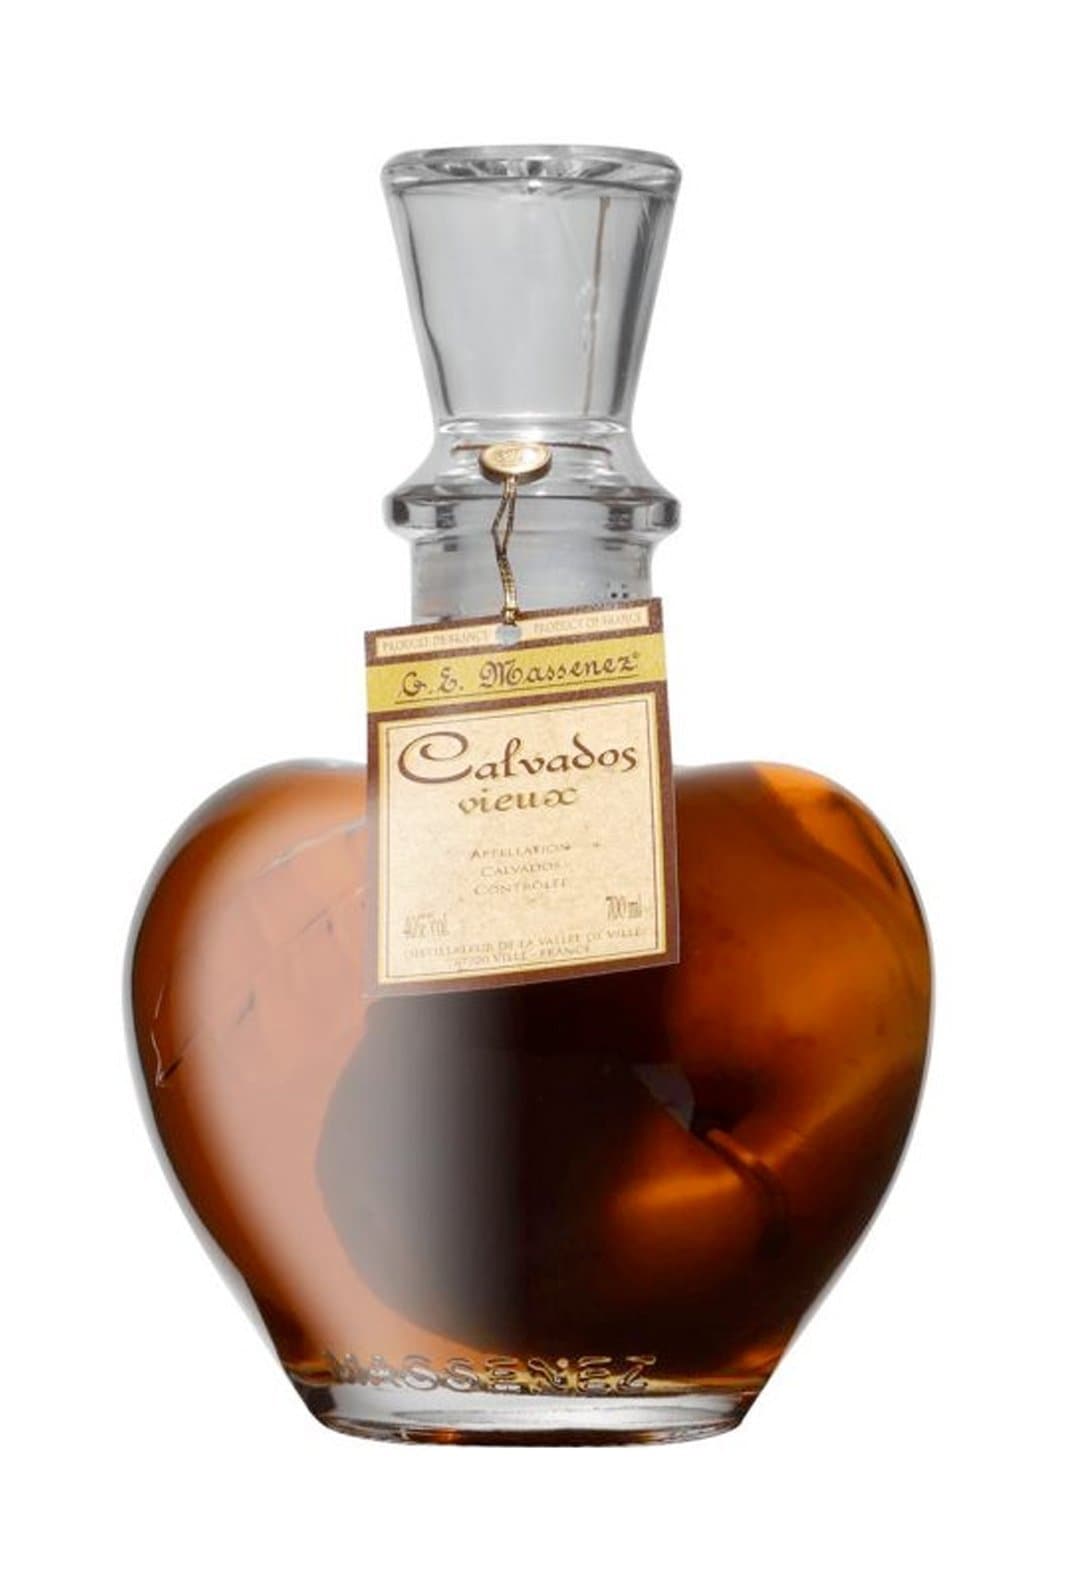 Massenez Calvados Vieux Prisoner Carafe 40% 700ml | Liqueurs | Shop online at Spirits of France